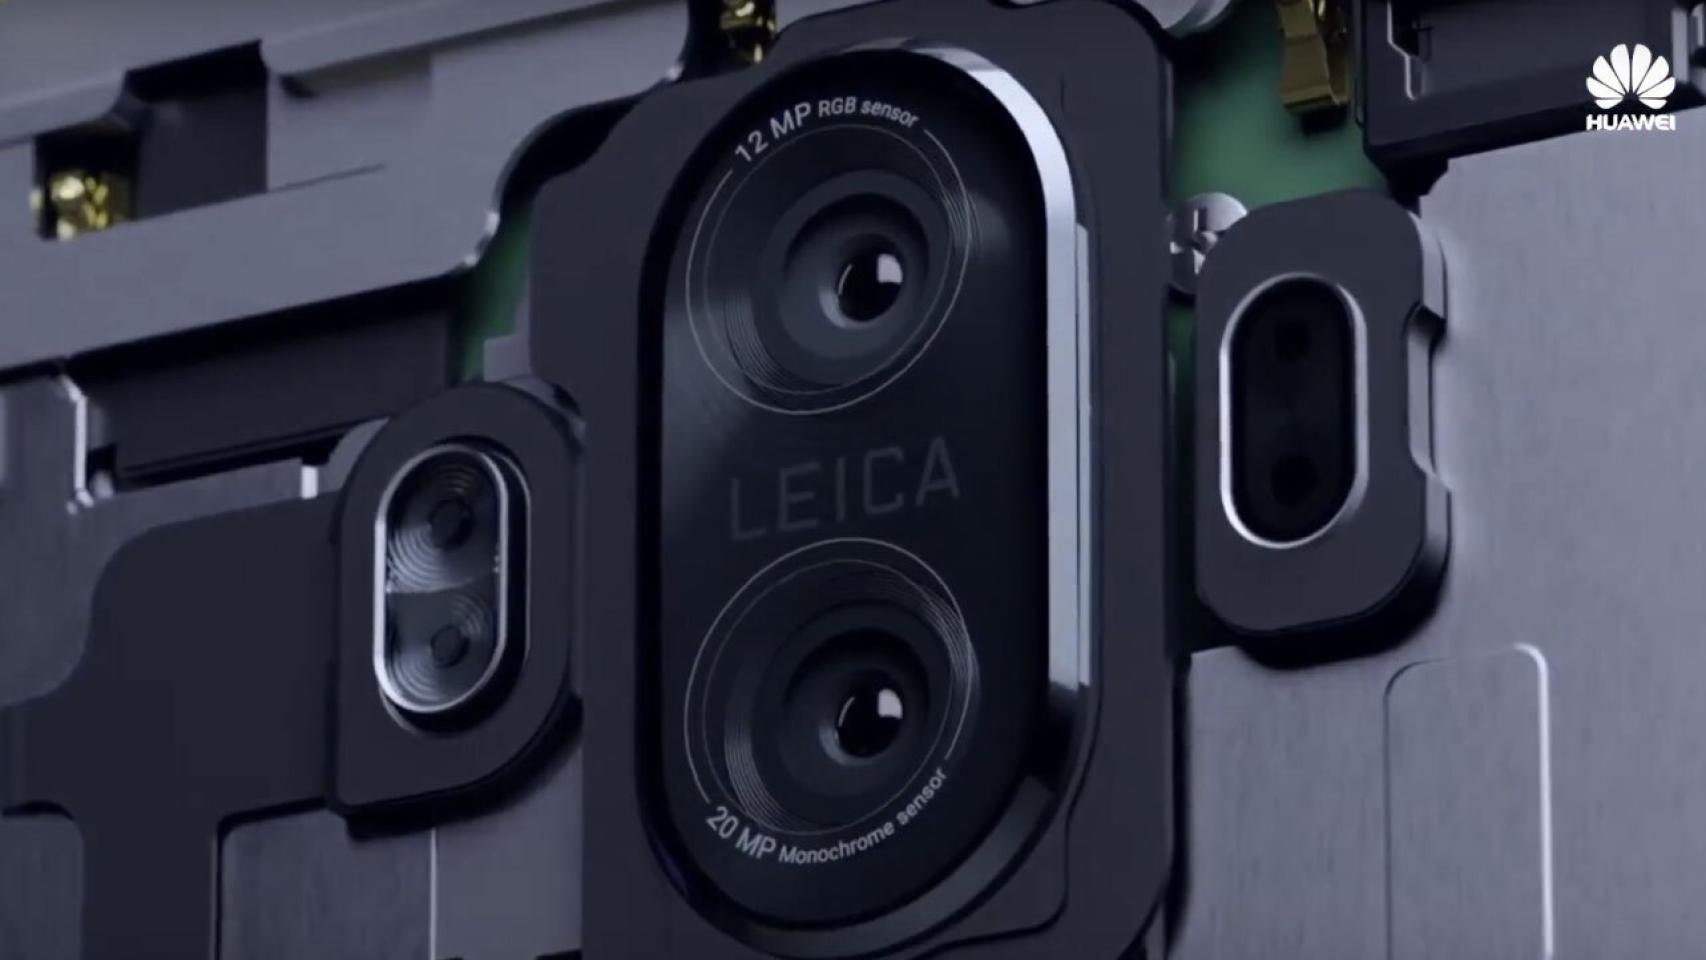 El Huawei Mate 10 presume de doble cámara en su primer vídeo